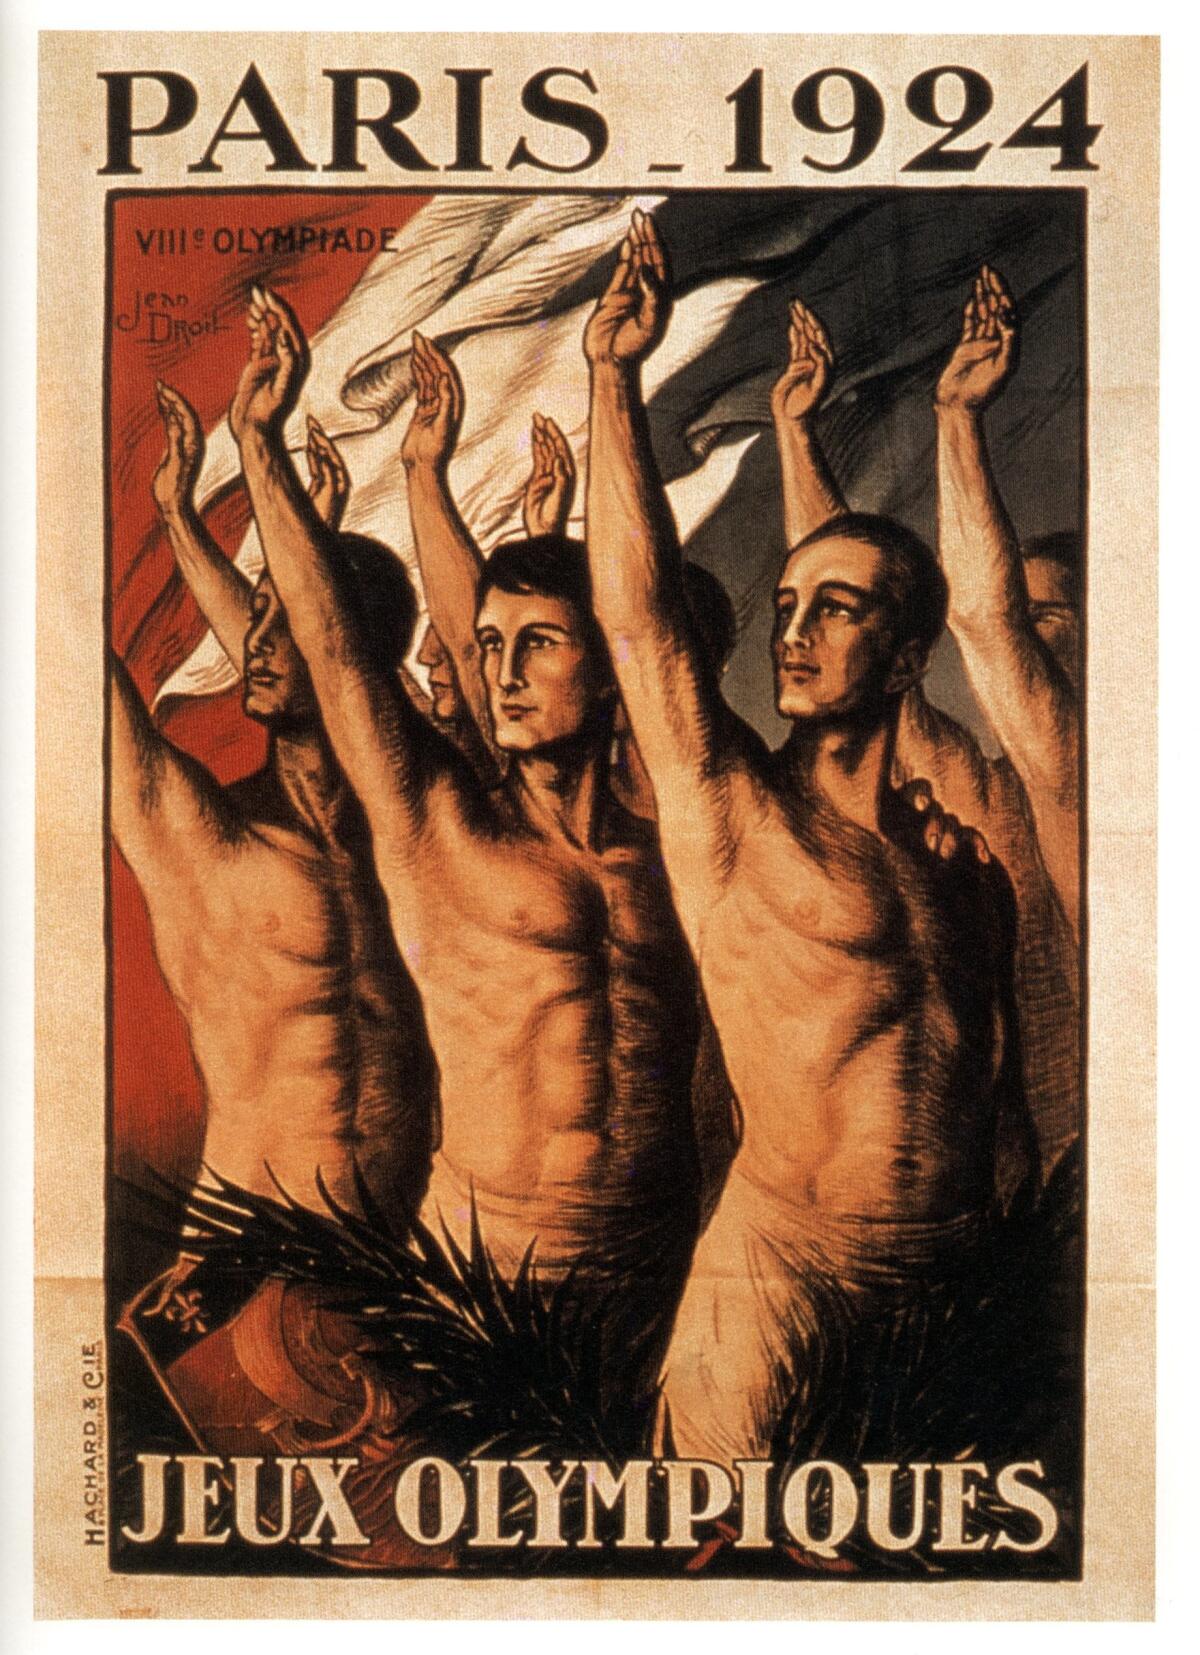 Les VIIIᵉ Jeux olympiques, à Paris, du 4 mai au 27 juillet 1924, introduisent le salut olympique. Proche du salut nazi, il sera supprimé après-guerre.